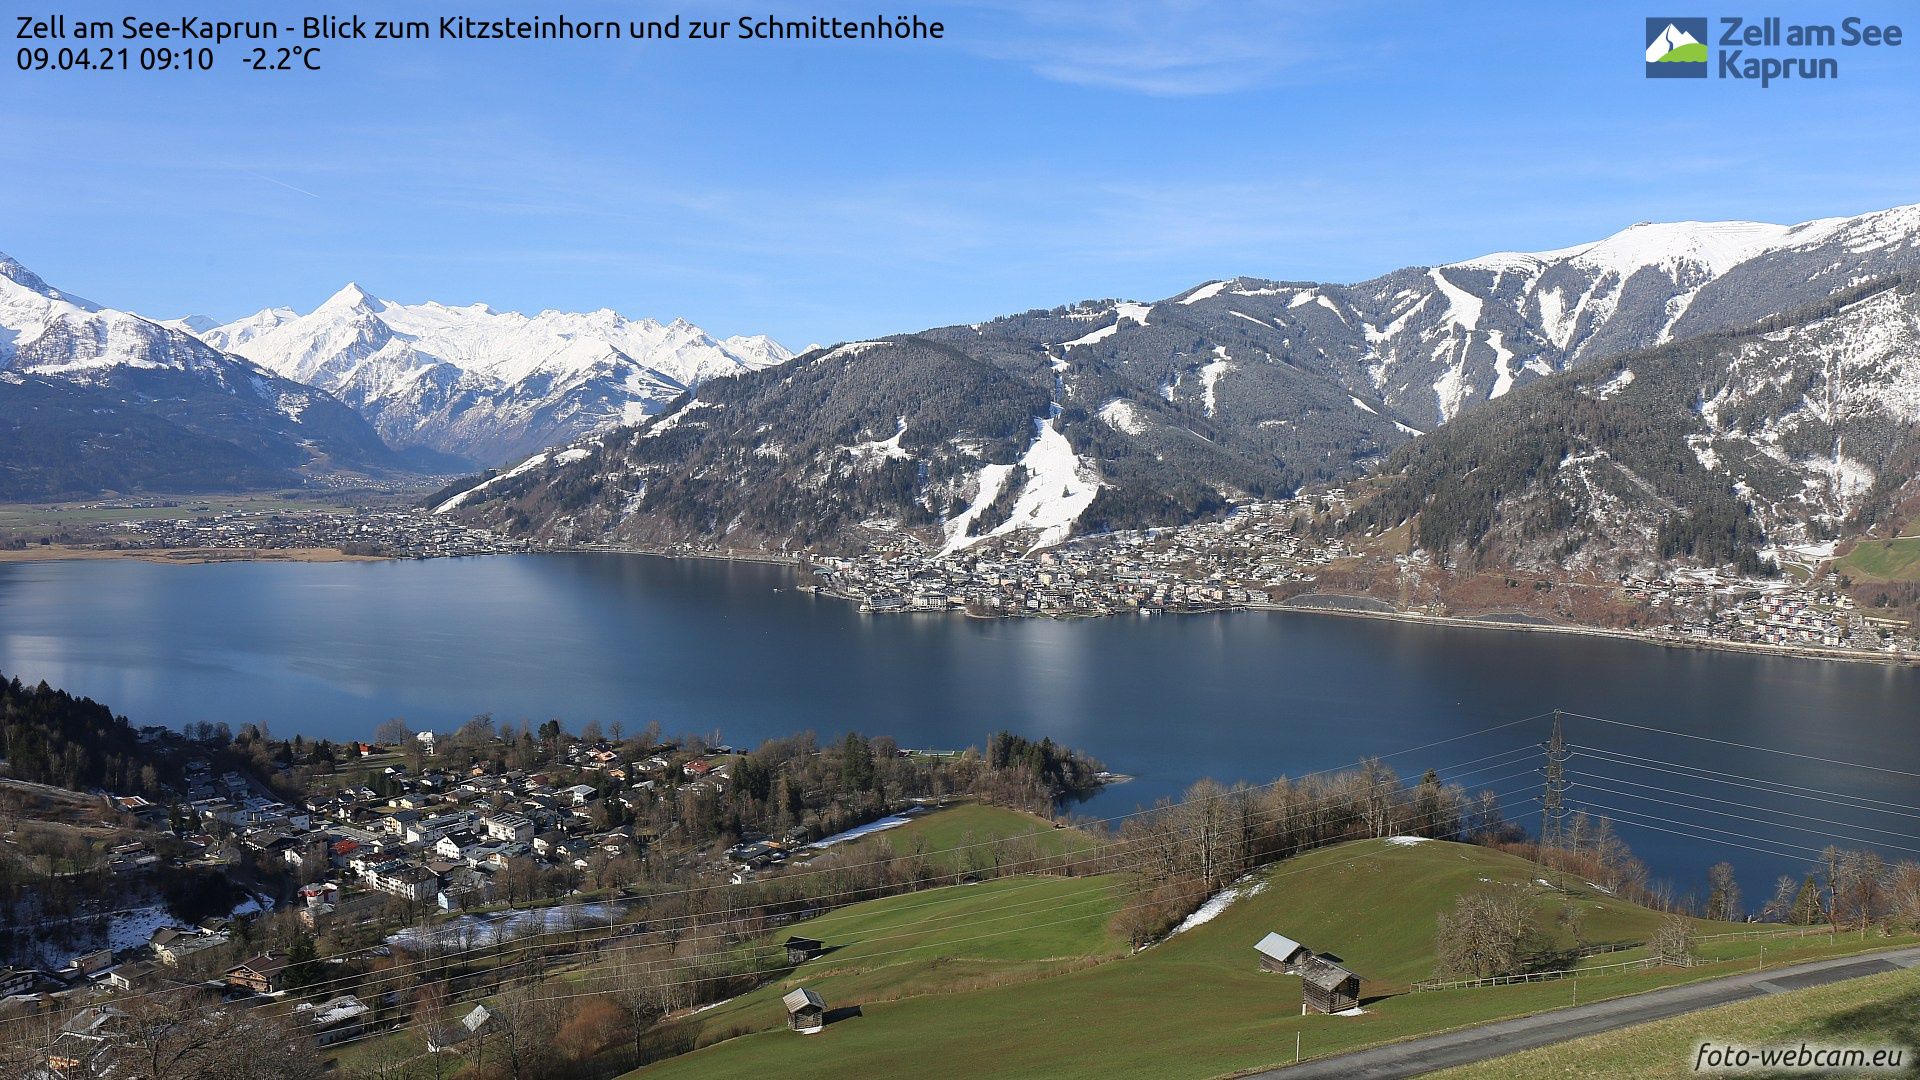 De dalen zijn alweer grotendeels sneeuwvrij, zoals hier in Zell am See (foto-webcam.eu)